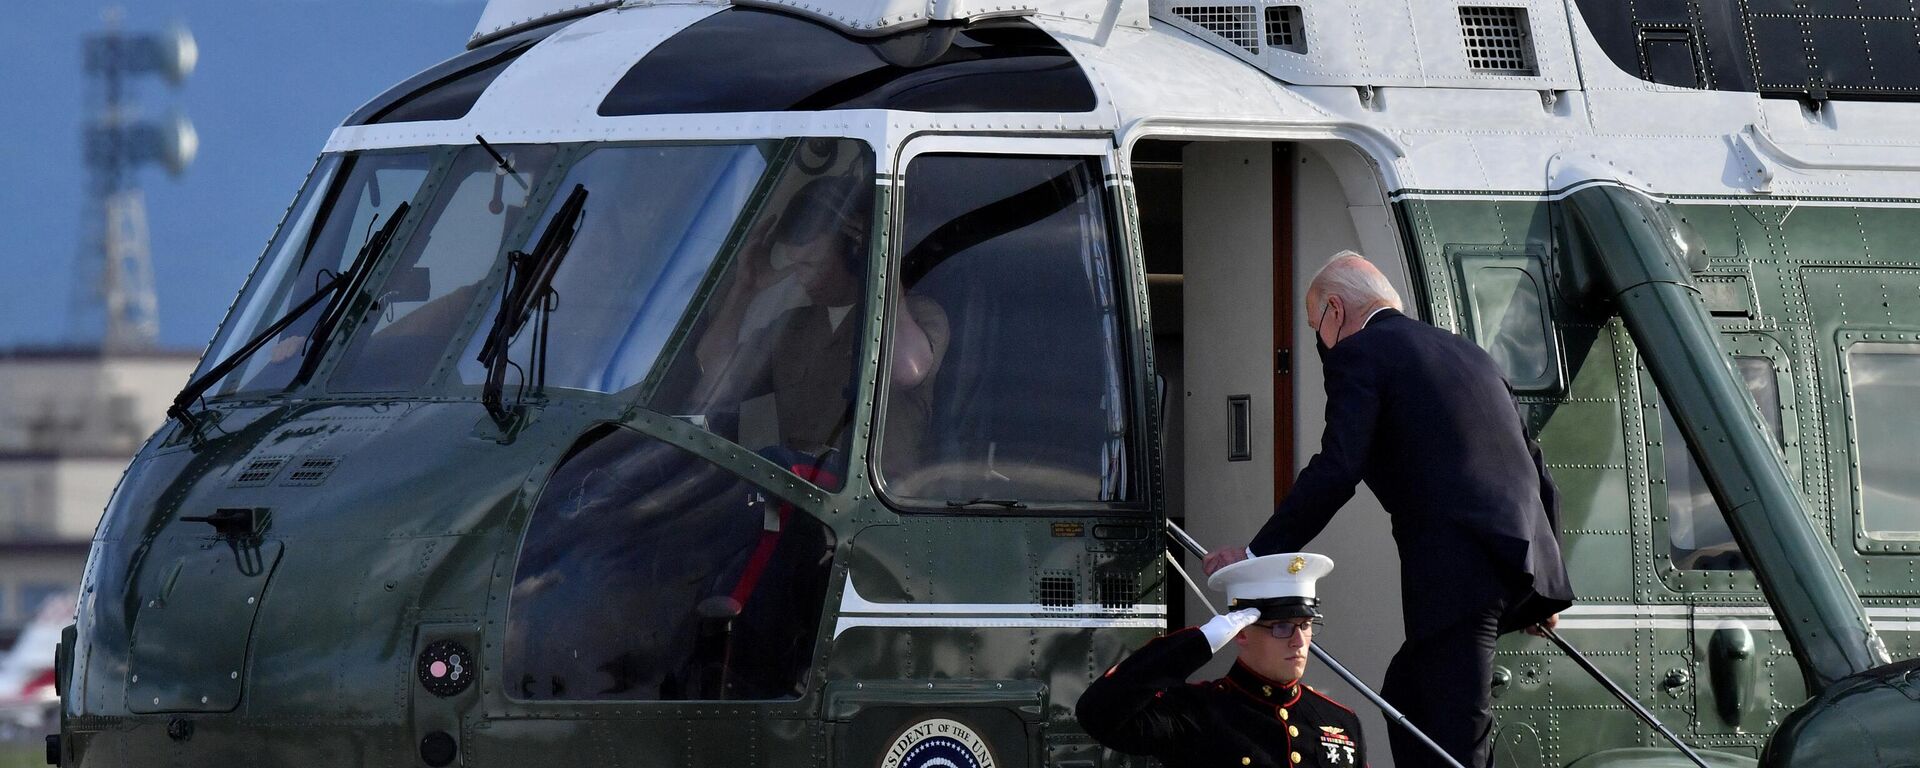 الرئيس الأمريكي جو بايدن يصعد على حوامه  بعد وصوله إلى قاعدة يوكوتا الجوية في 22 مايو 2022. - سبوتنيك عربي, 1920, 11.01.2023